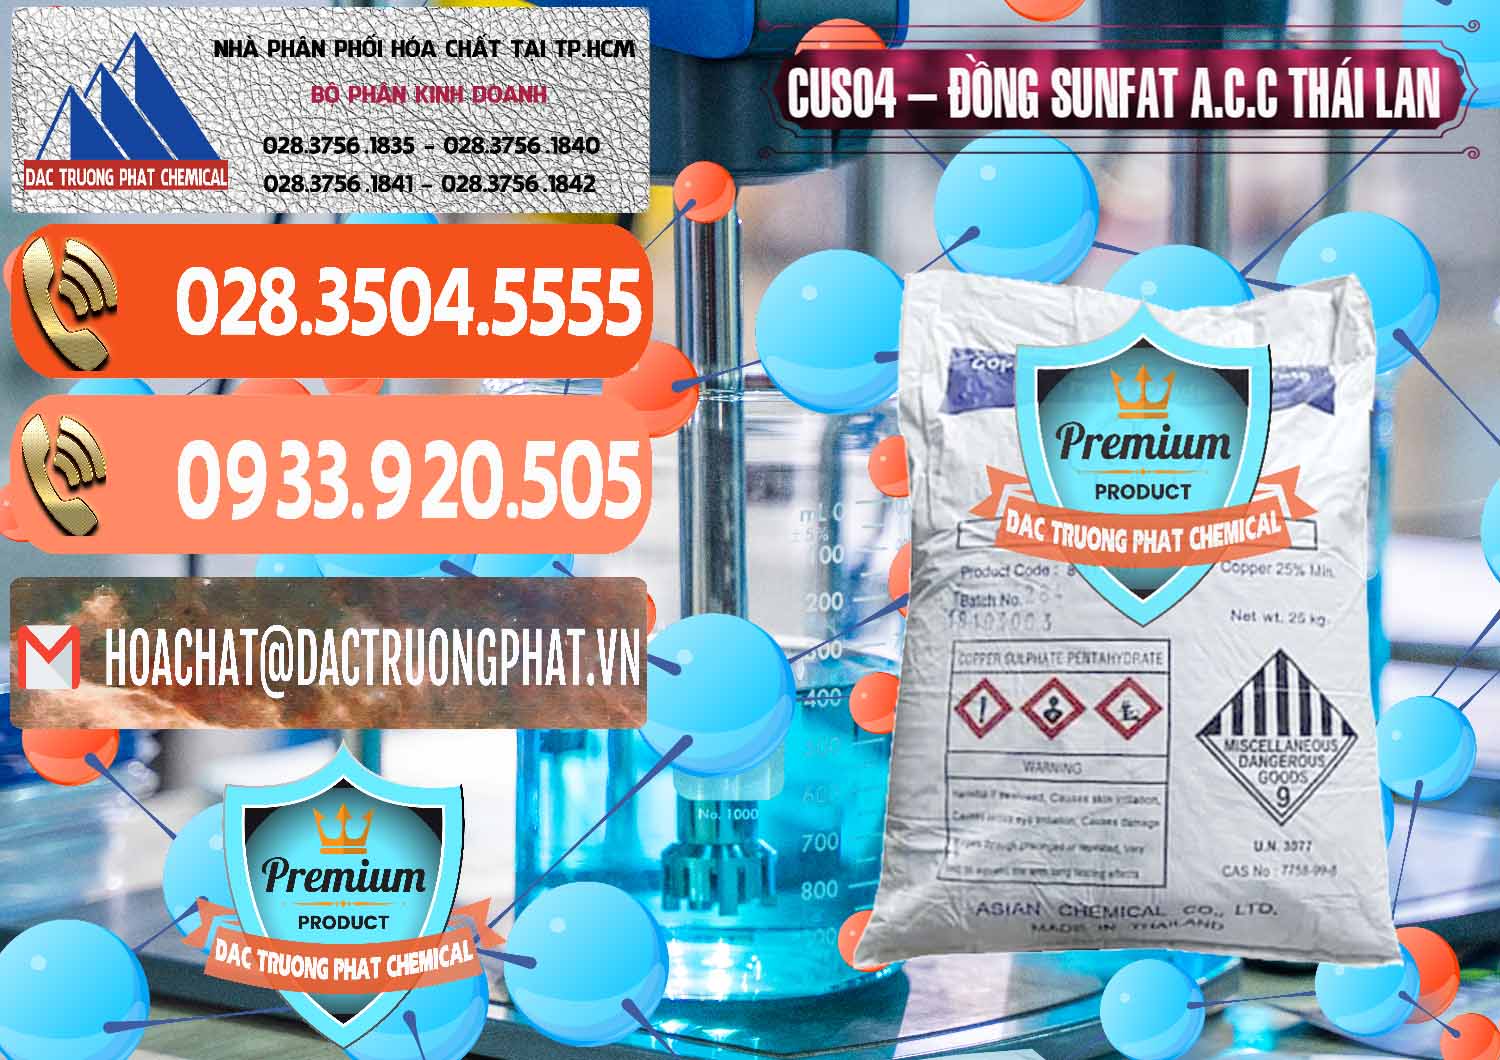 Công ty kinh doanh và bán CuSO4 – Đồng Sunfat A.C.C Thái Lan - 0249 - Nhà phân phối & cung cấp hóa chất tại TP.HCM - hoachatmientay.com